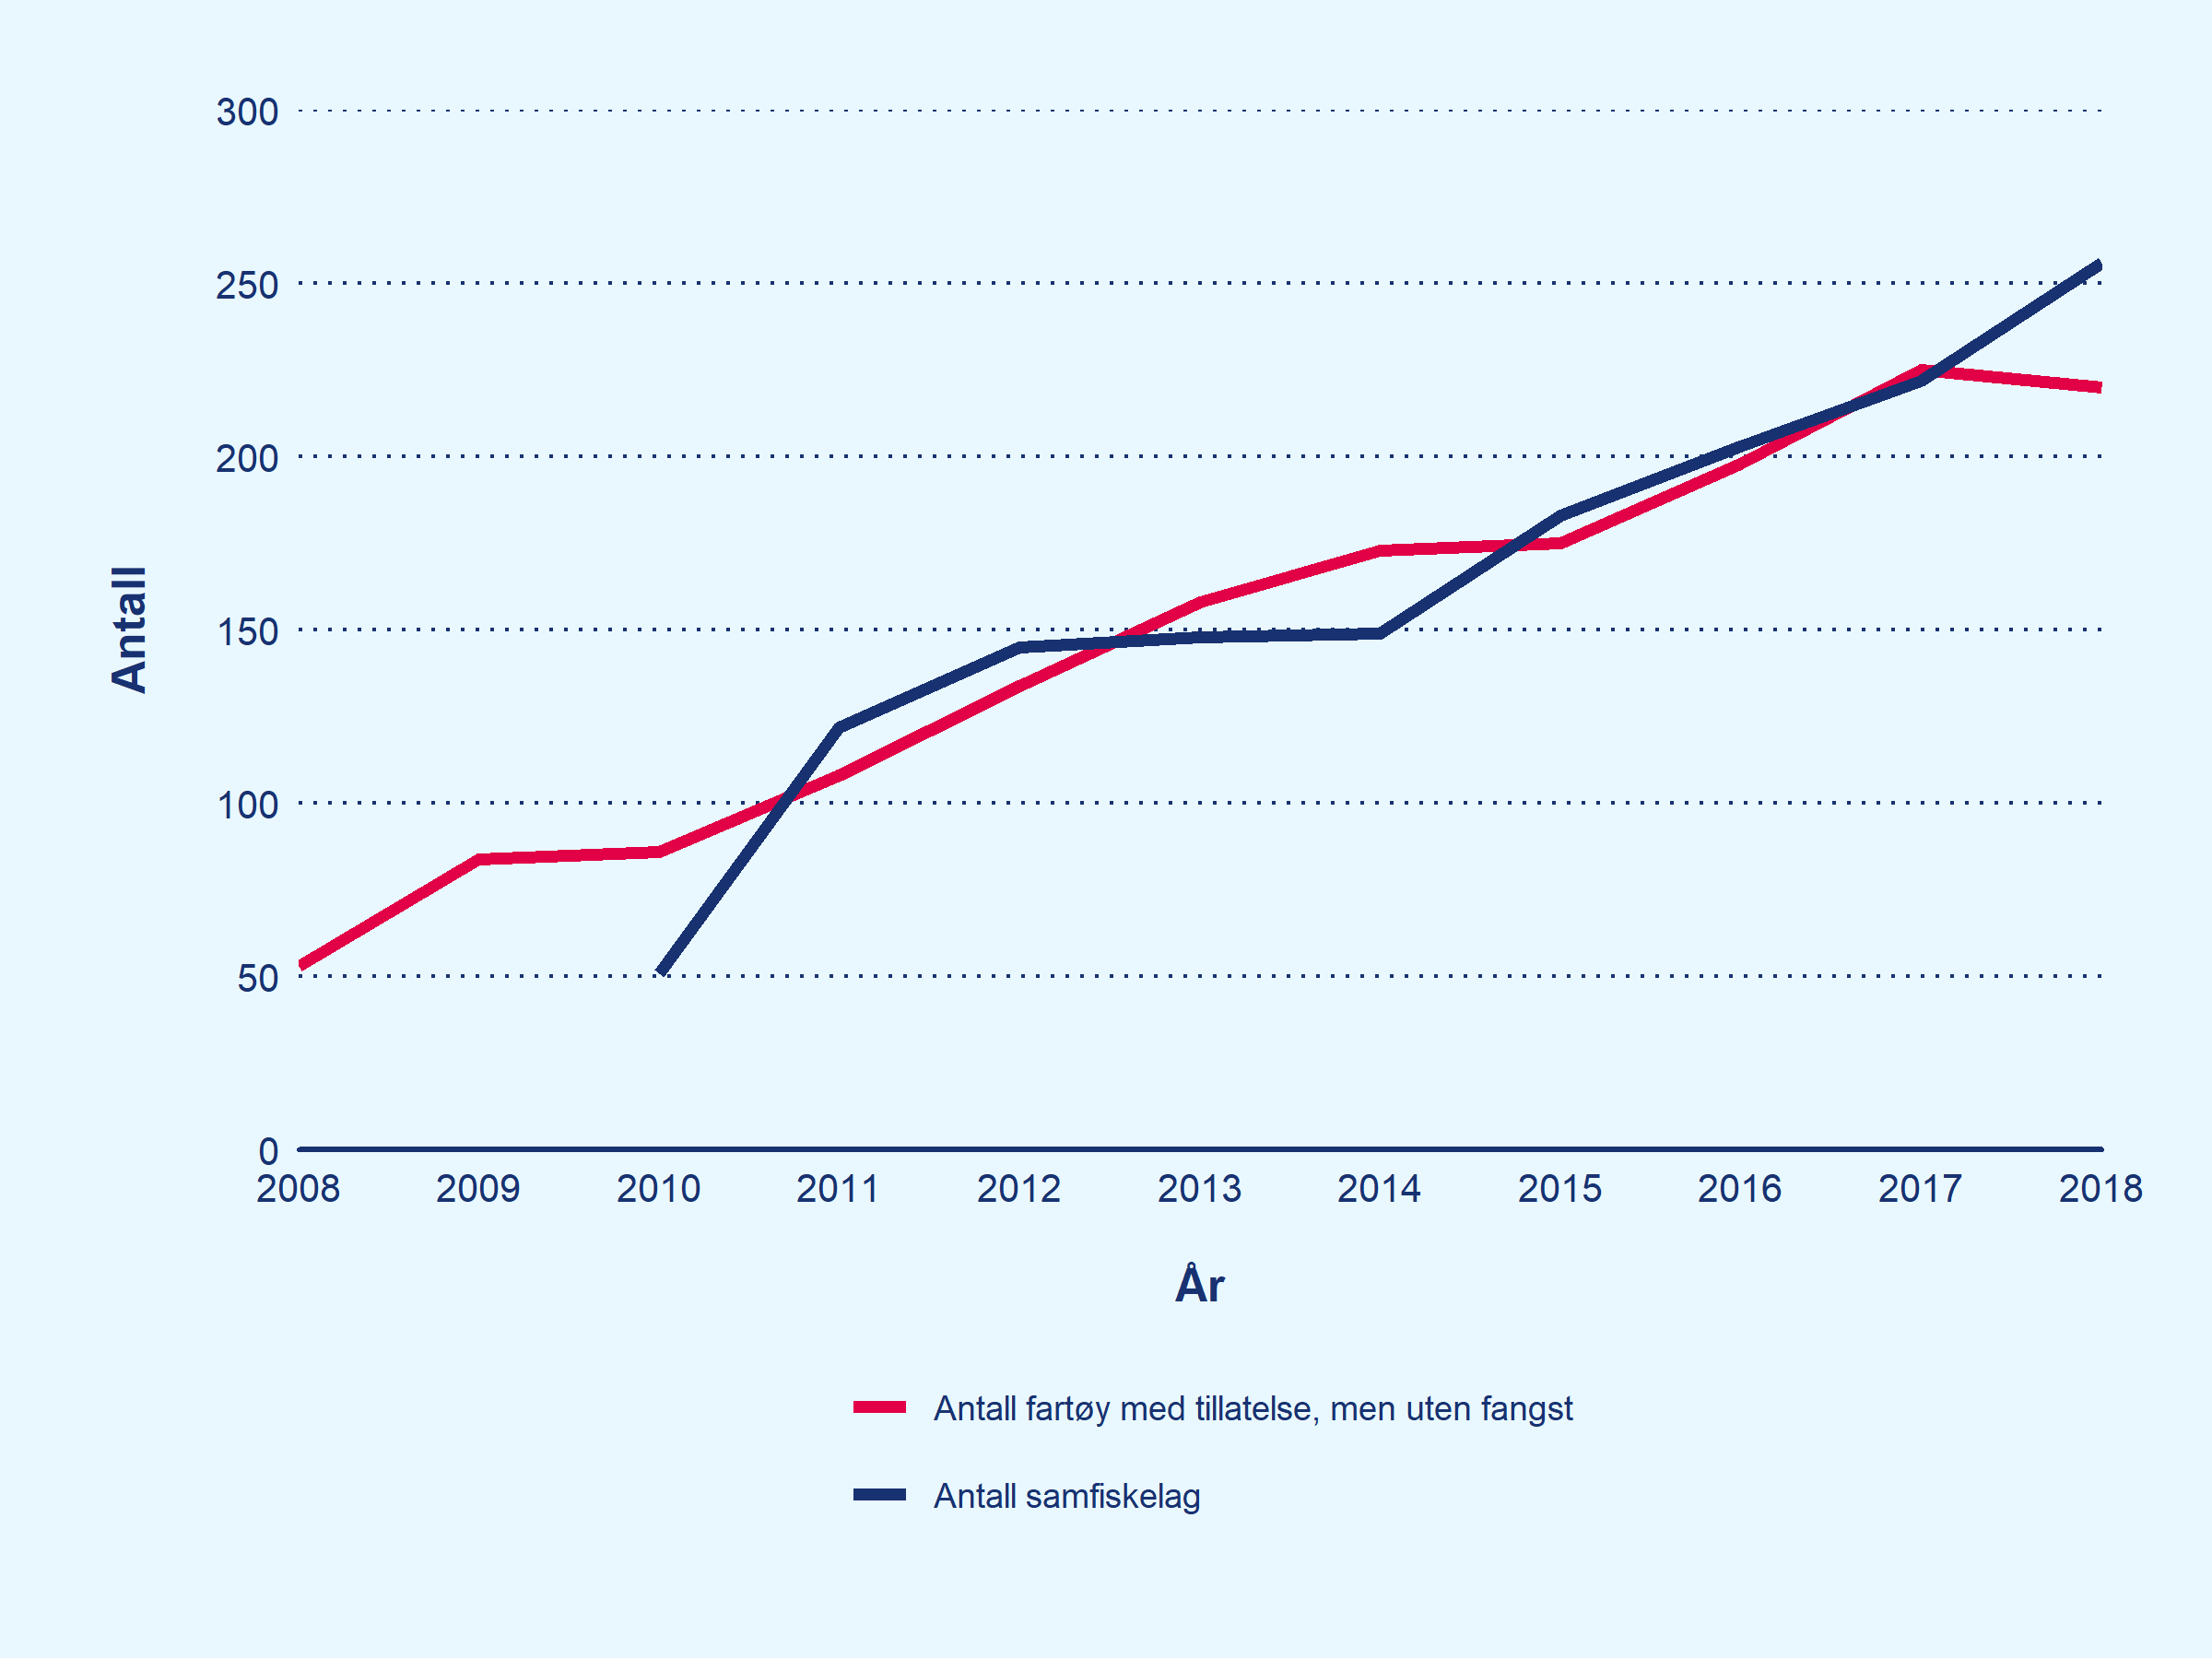 Linjediagram som viser utviklingen i antall fartøy under 11 meter med torsketillatelse som ikke lander fangst i løpet av året, og utviklingen i antall samfiskelag. Gjelder for perioden 2008 til 2018.